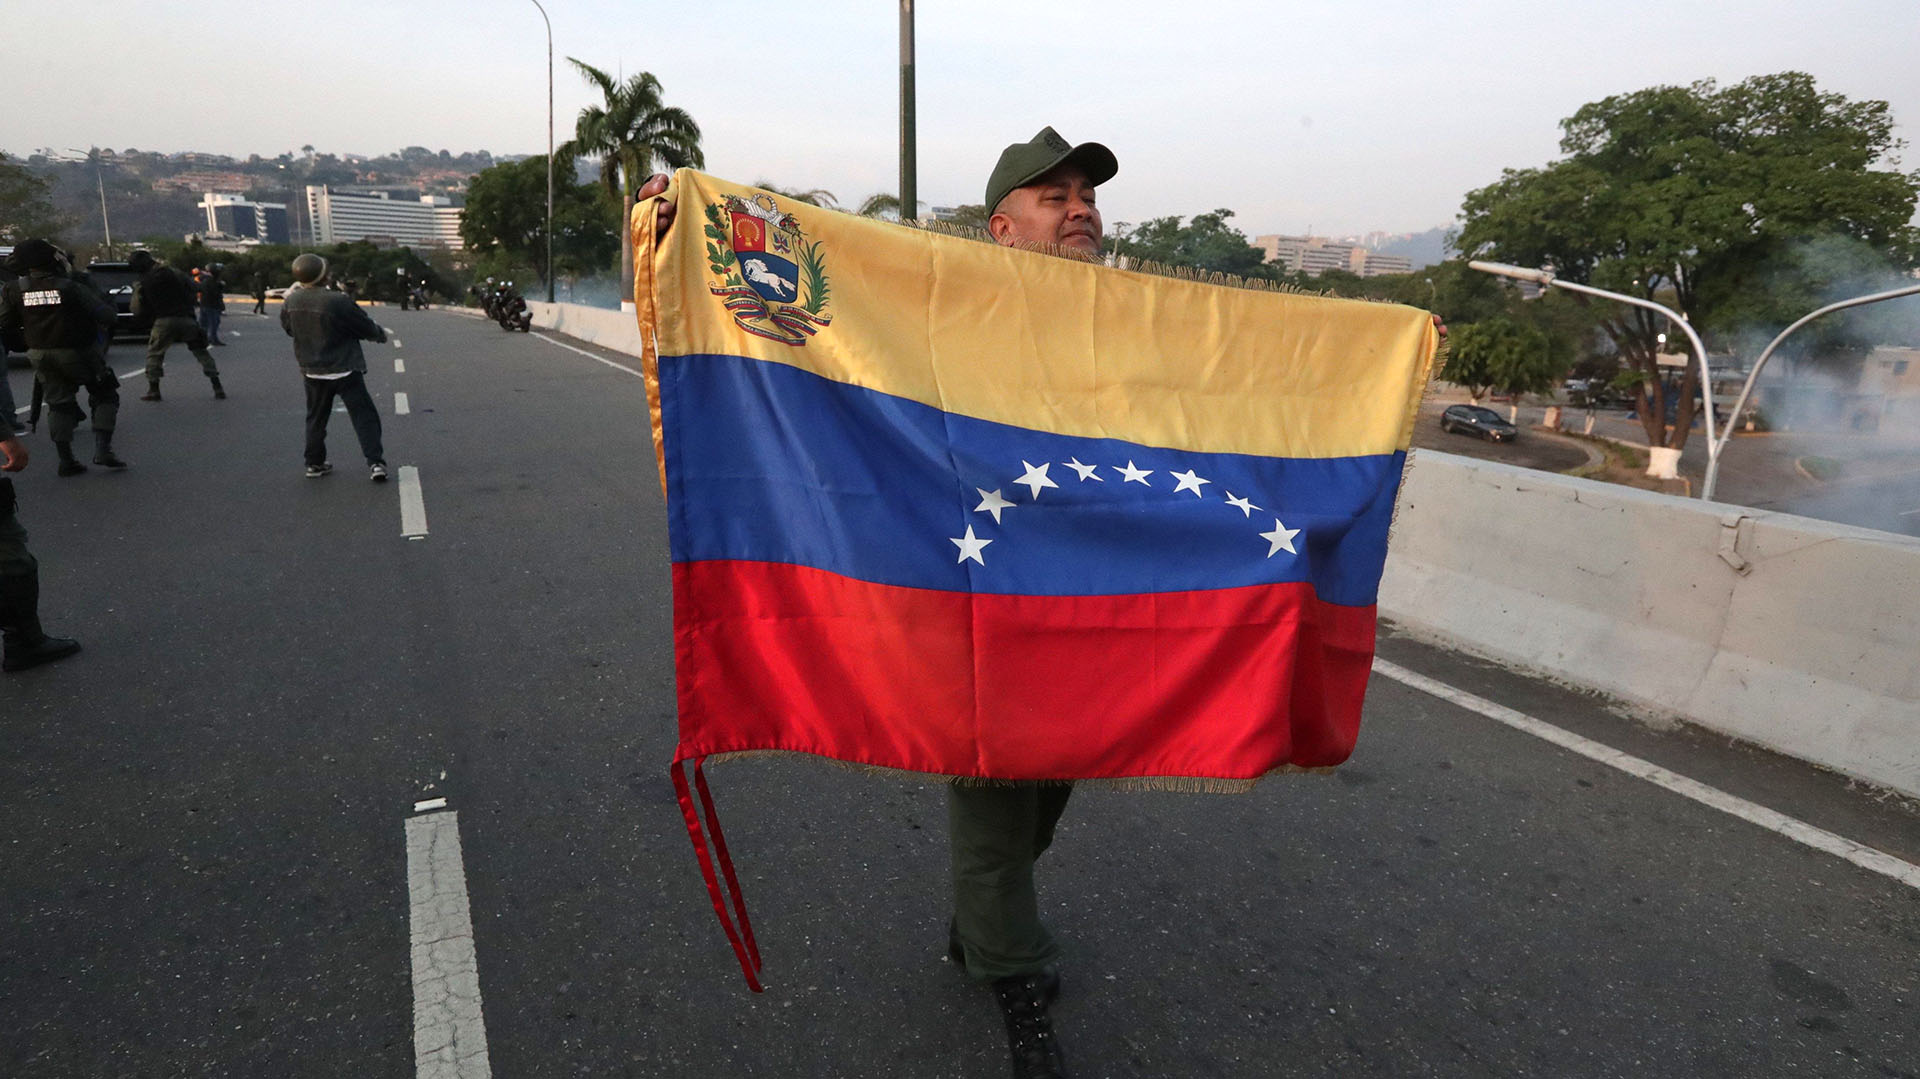 Un militar despliega una bandera en la base de La Carlota, al este de Caracas, donde ha sido conducido el opositor Leopoldo López, tras ser liberado este martes y donde se ha reunido con el presidente Juan Guaidó, que ha anunciado que los militares han dado el paso para unirse a él. EFE/Rayner Peña